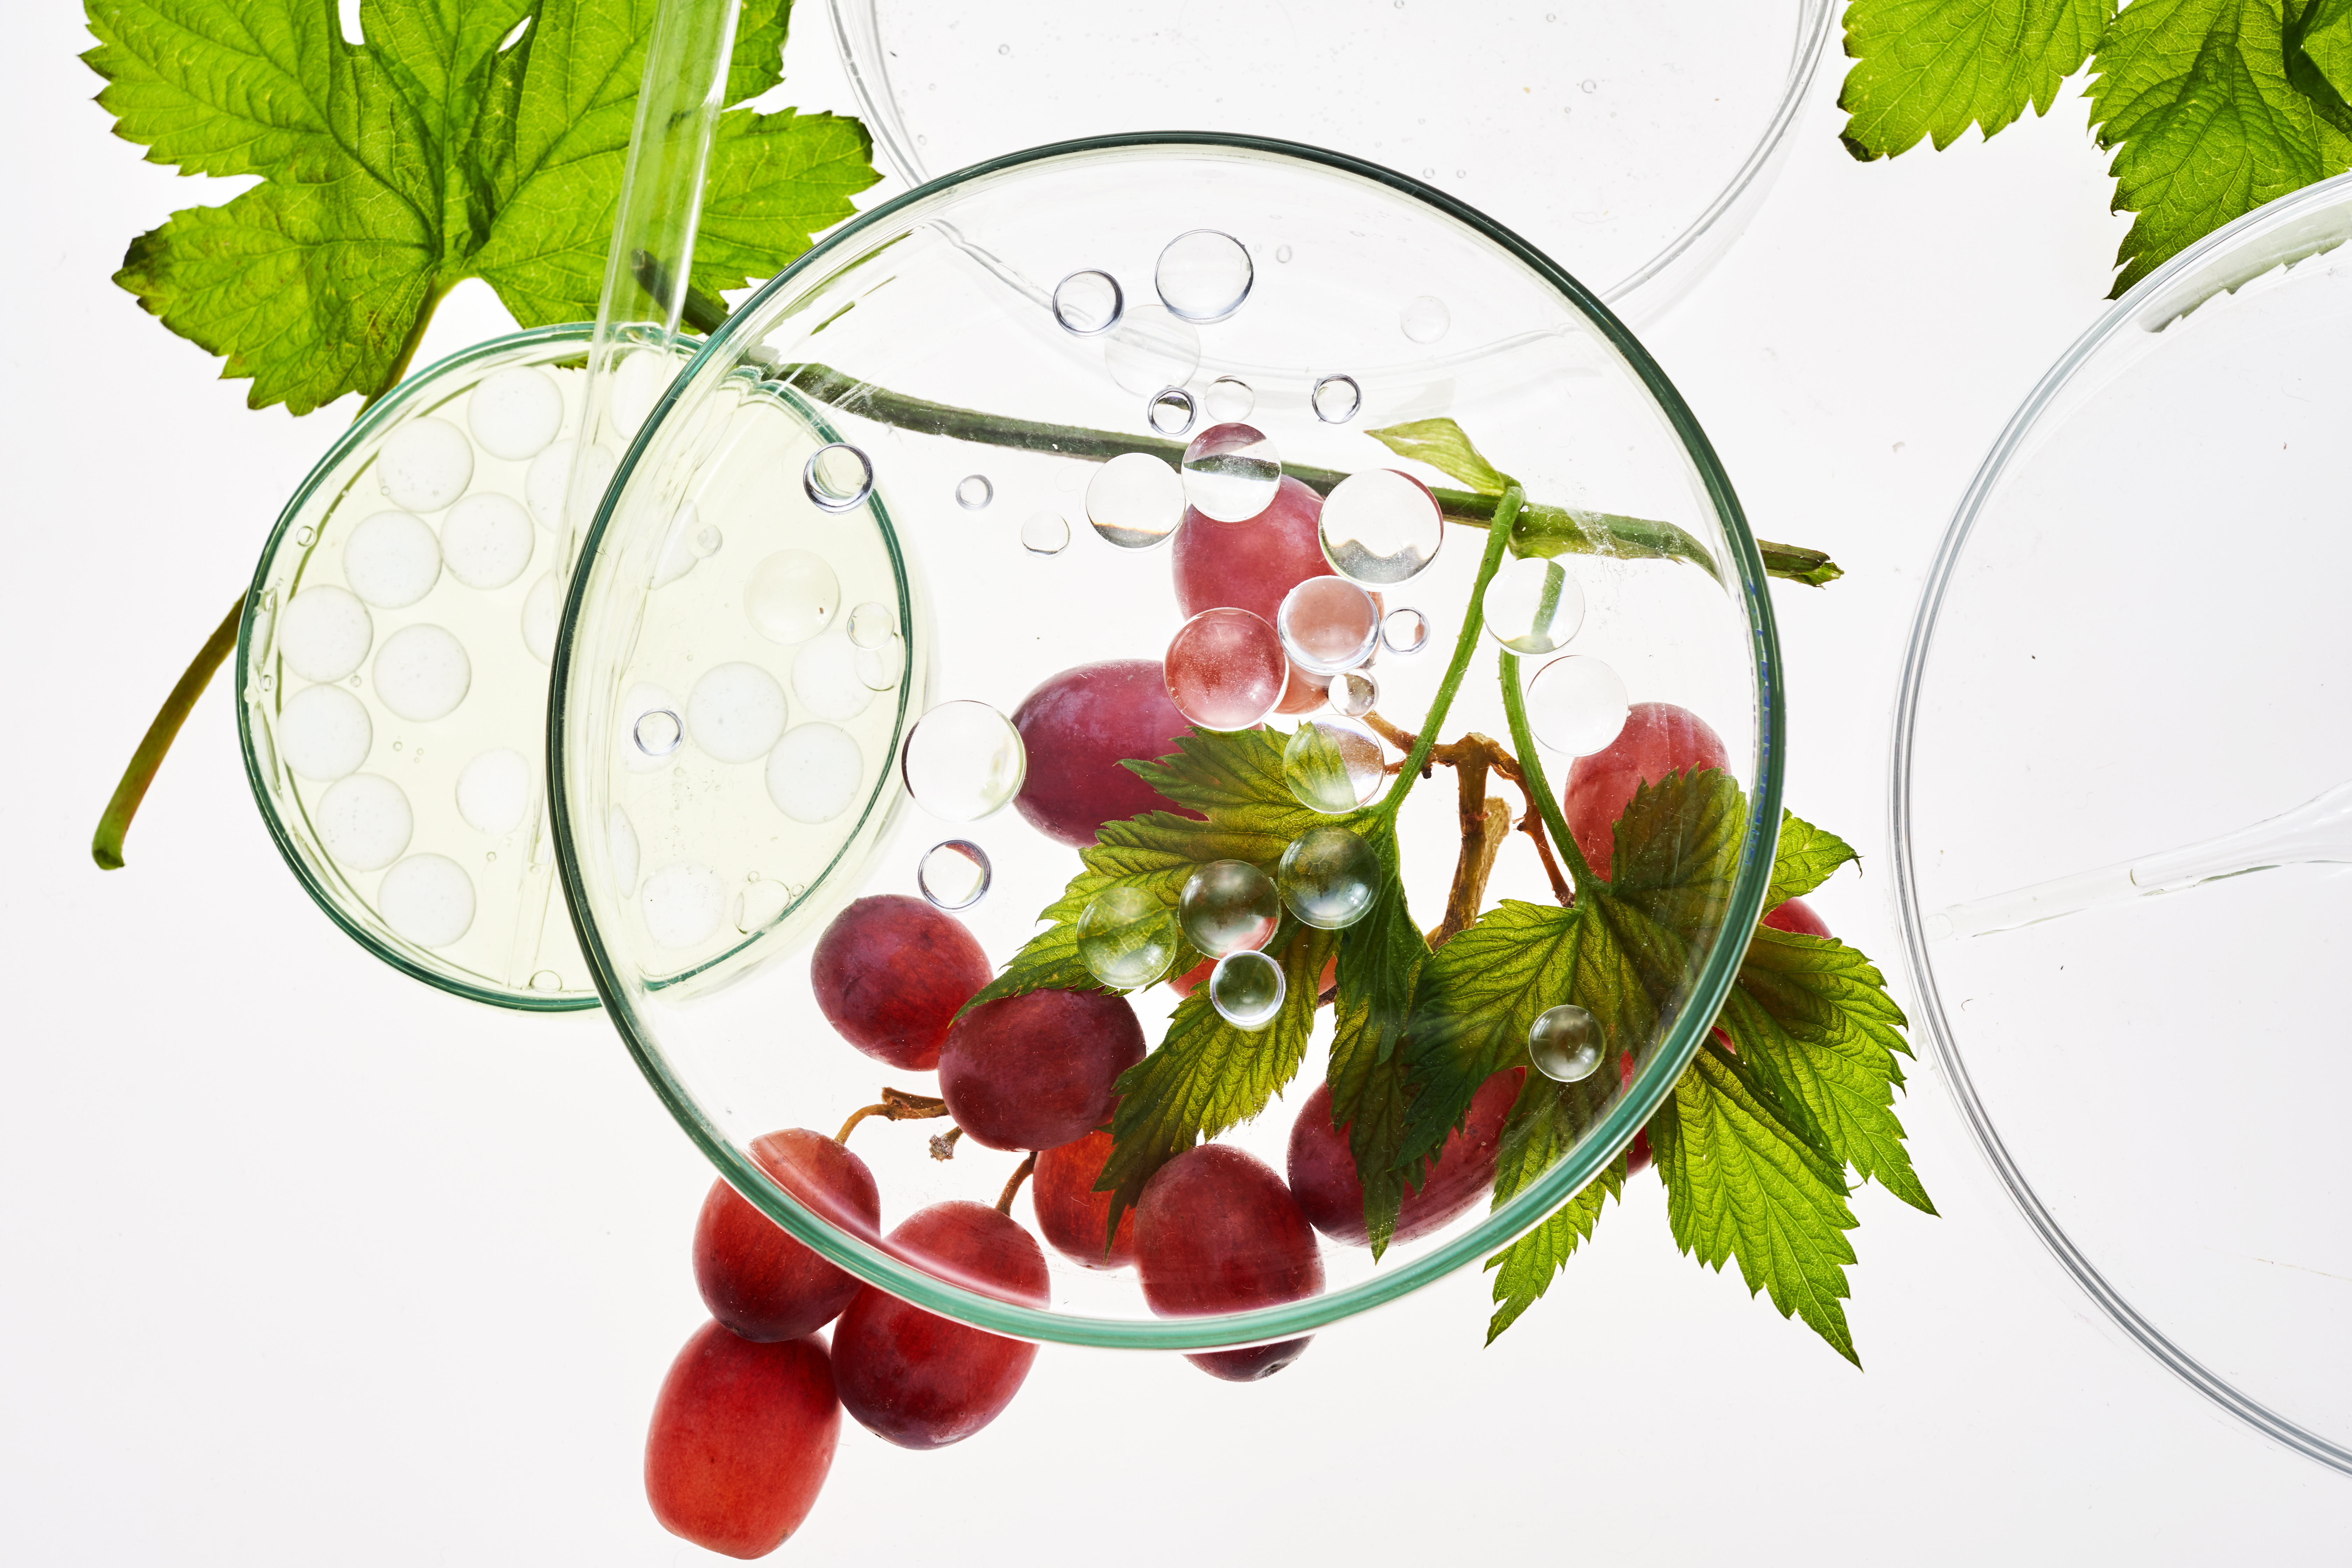 Le raisin également bénéfique pour la santé oculaire (Visuel Adobe Stock 436162726)